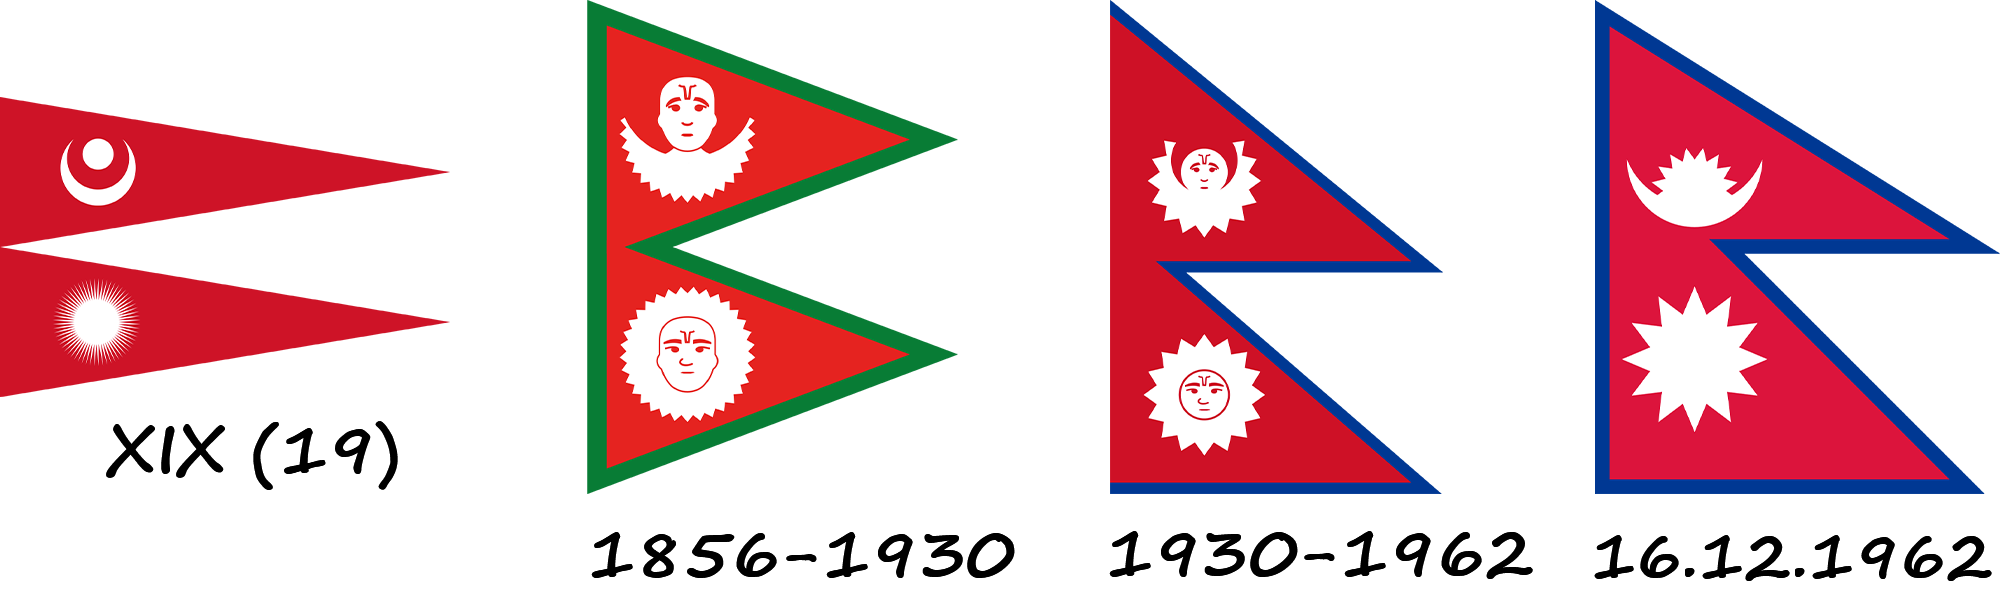 Історія прапору Непалу